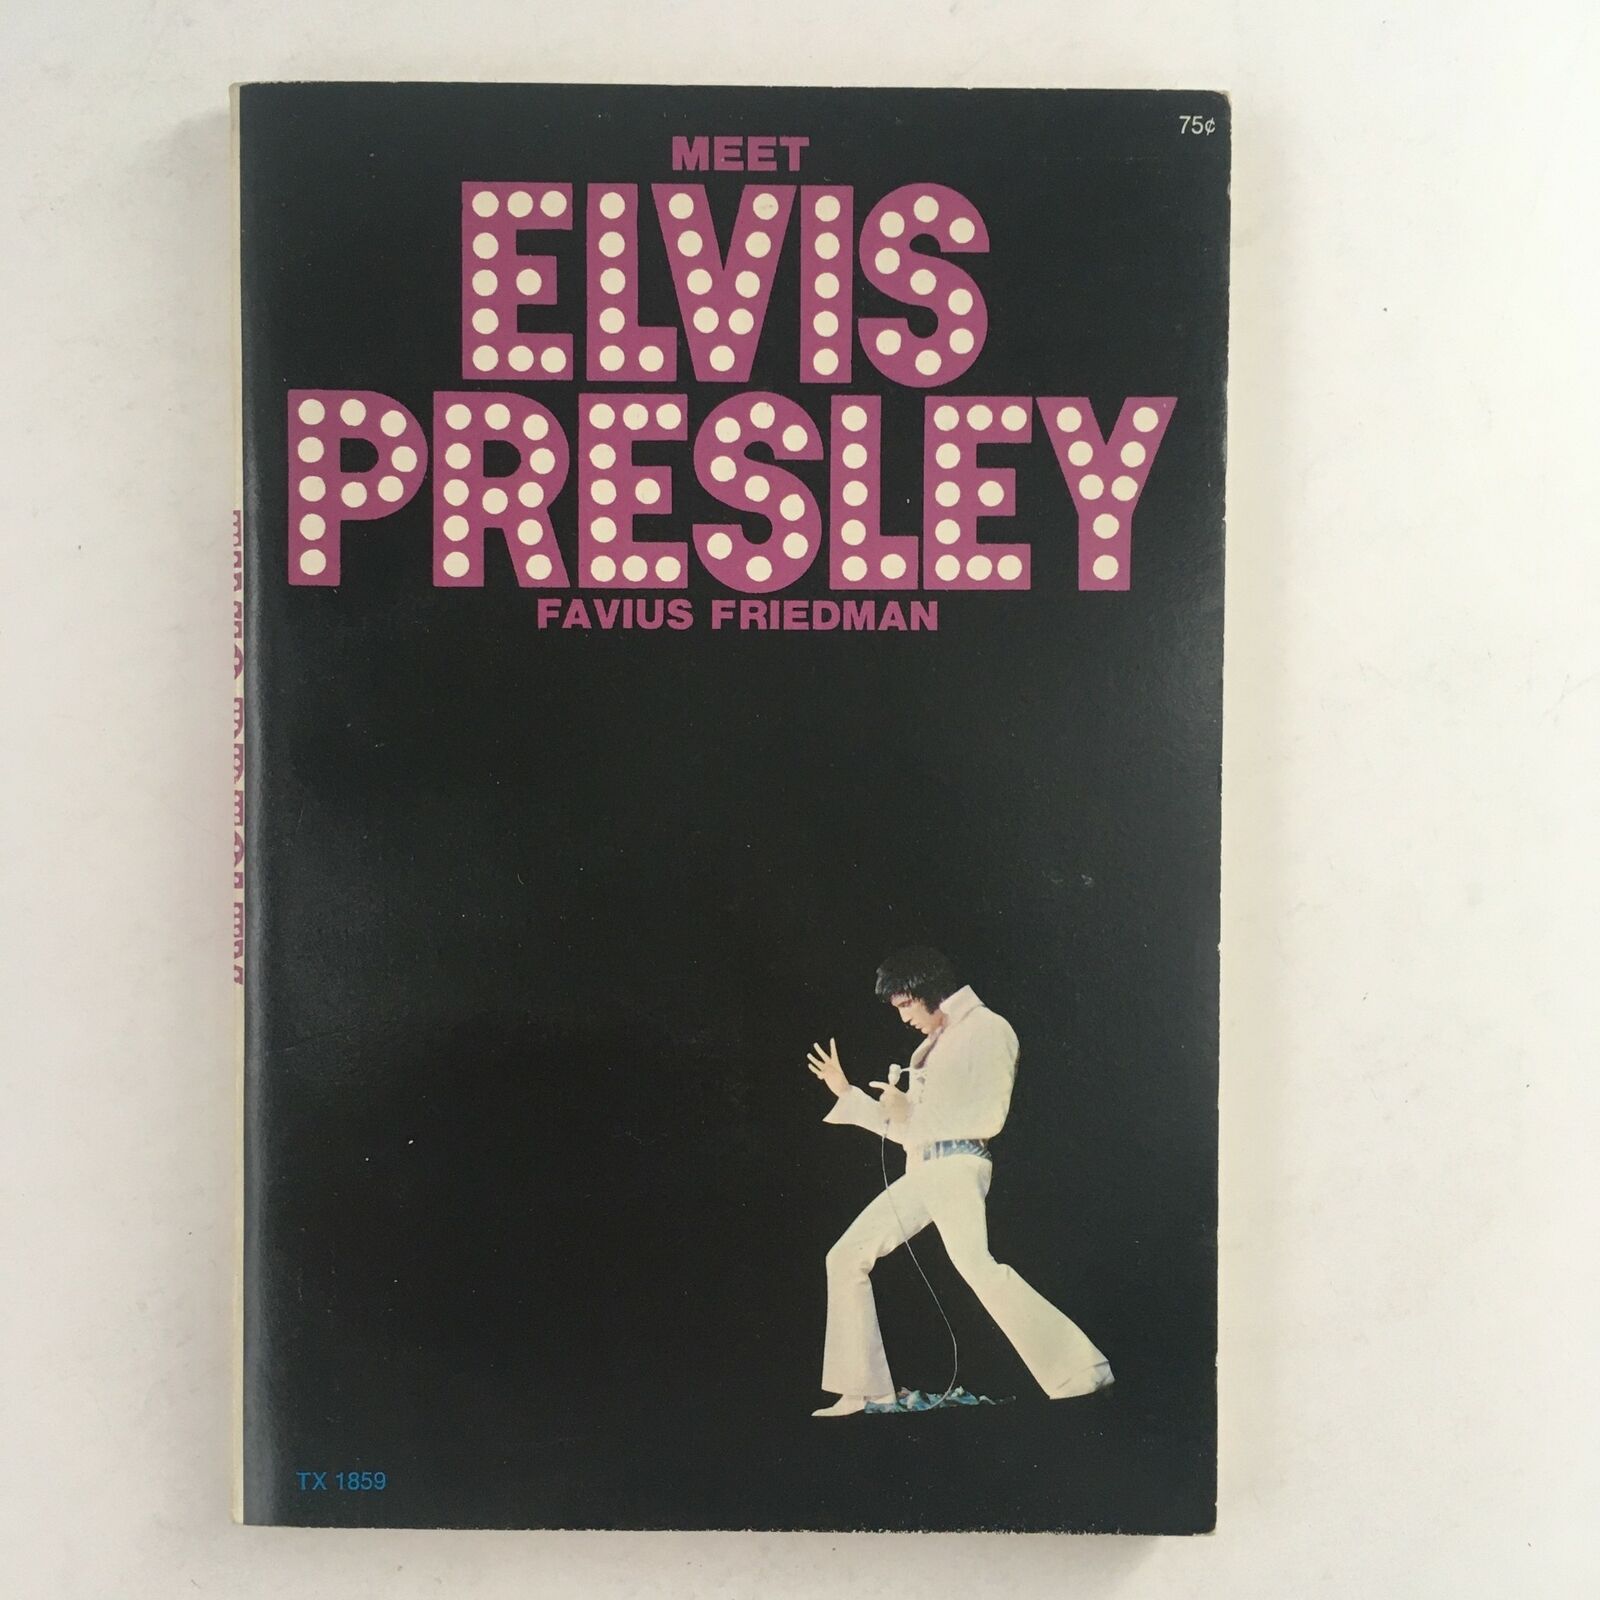 1973 Vintage Book Meet Elvis Presley By Favius Friedman